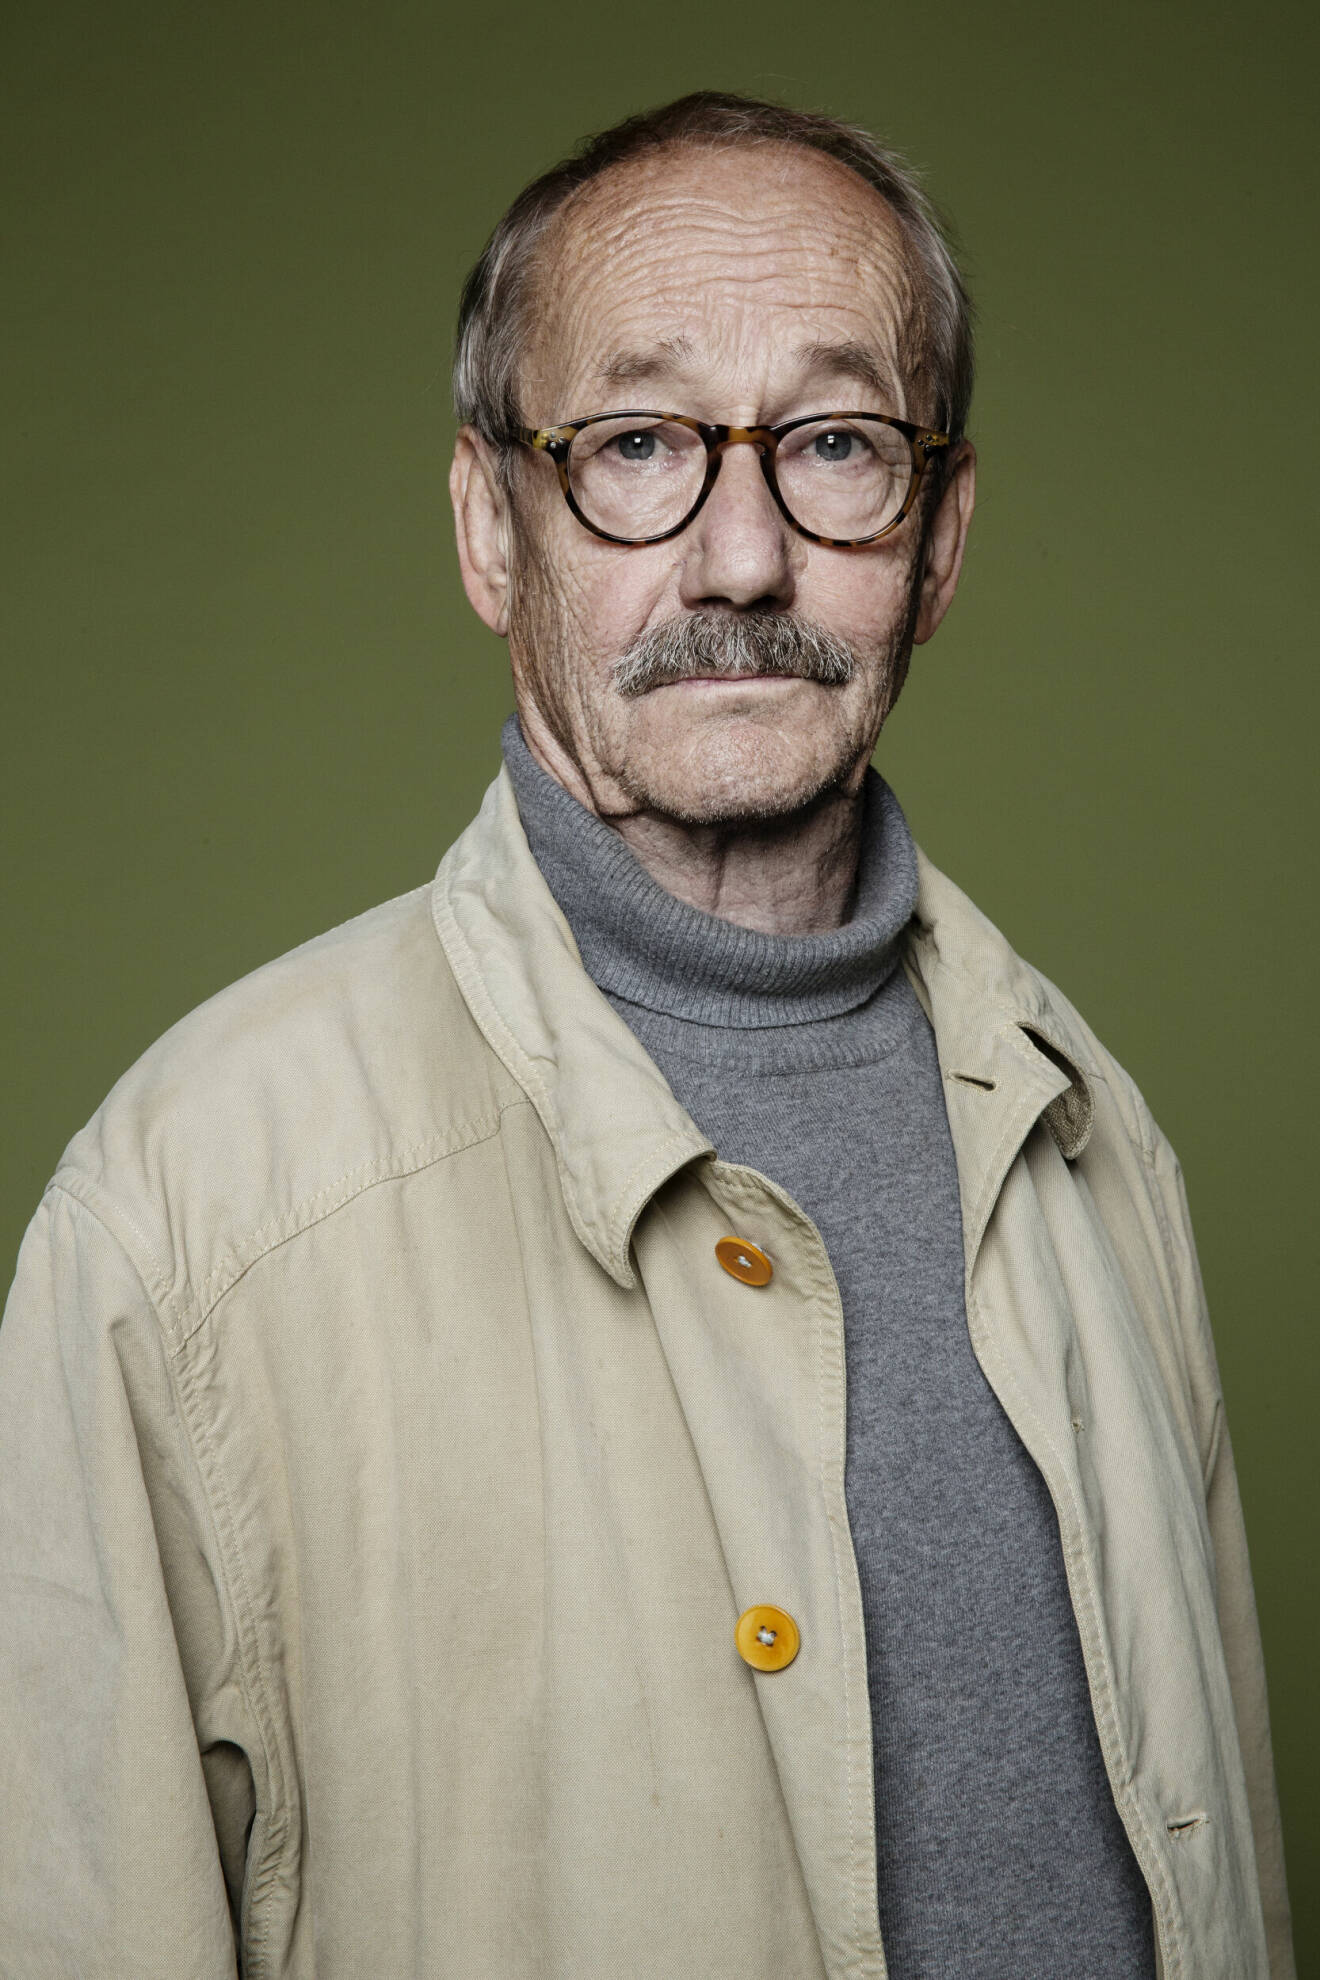 Gösta Ekman